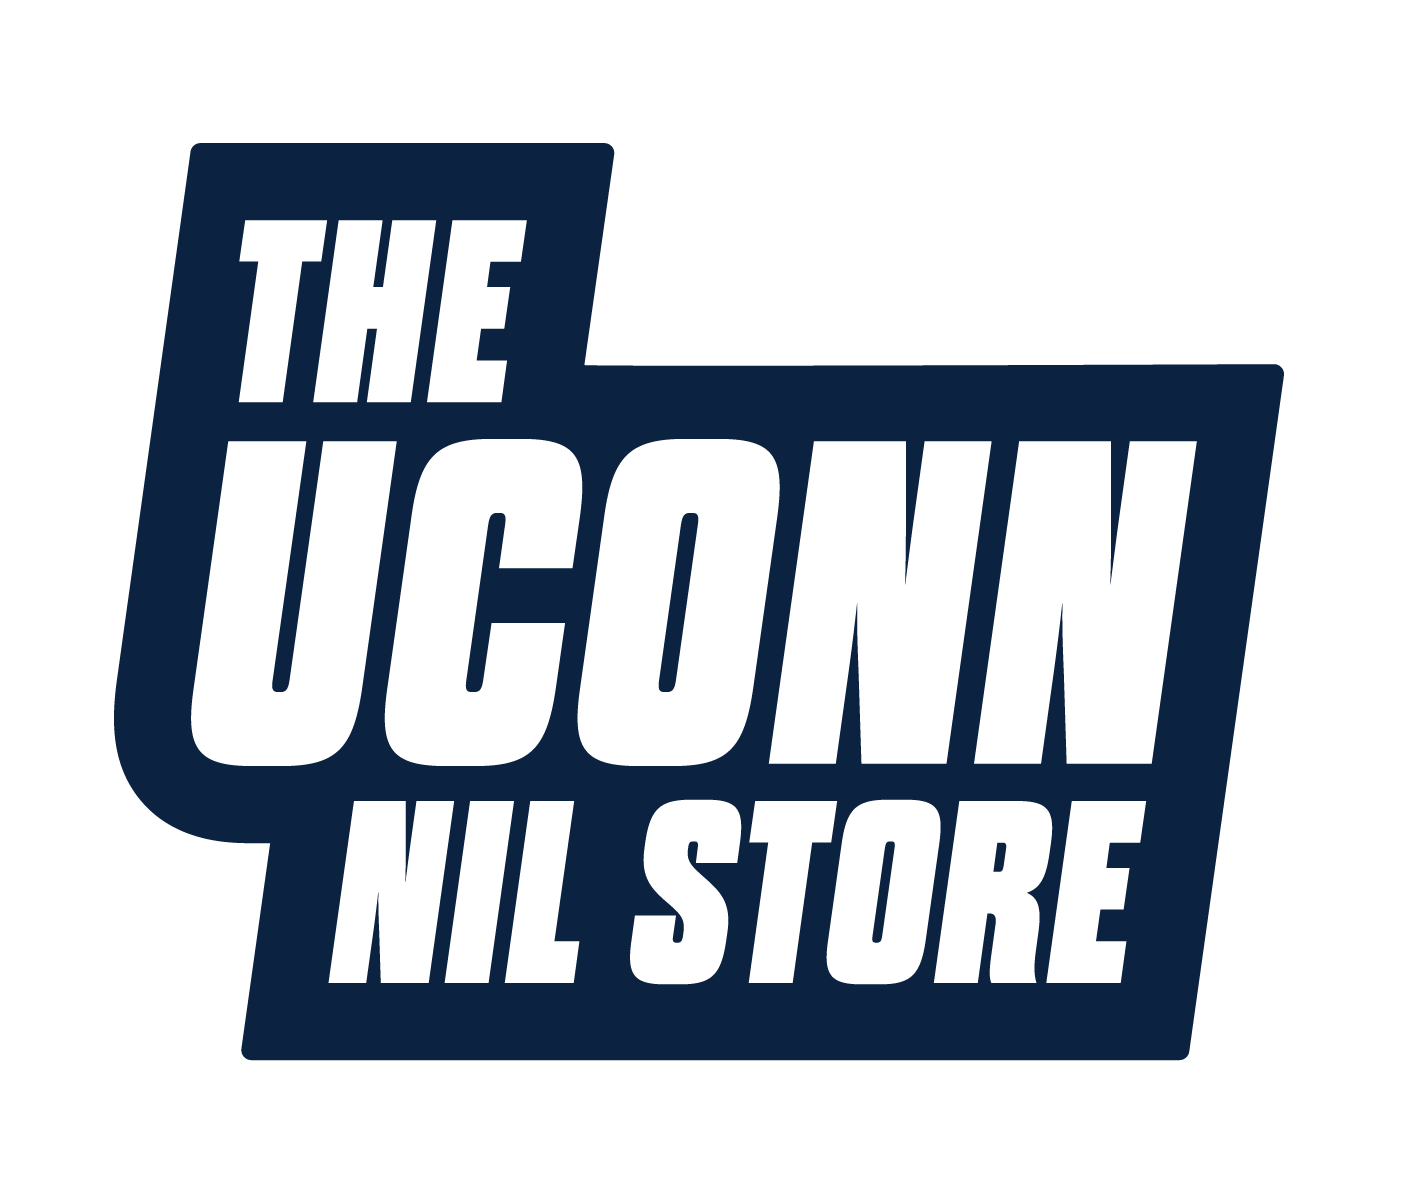 uconn logo png